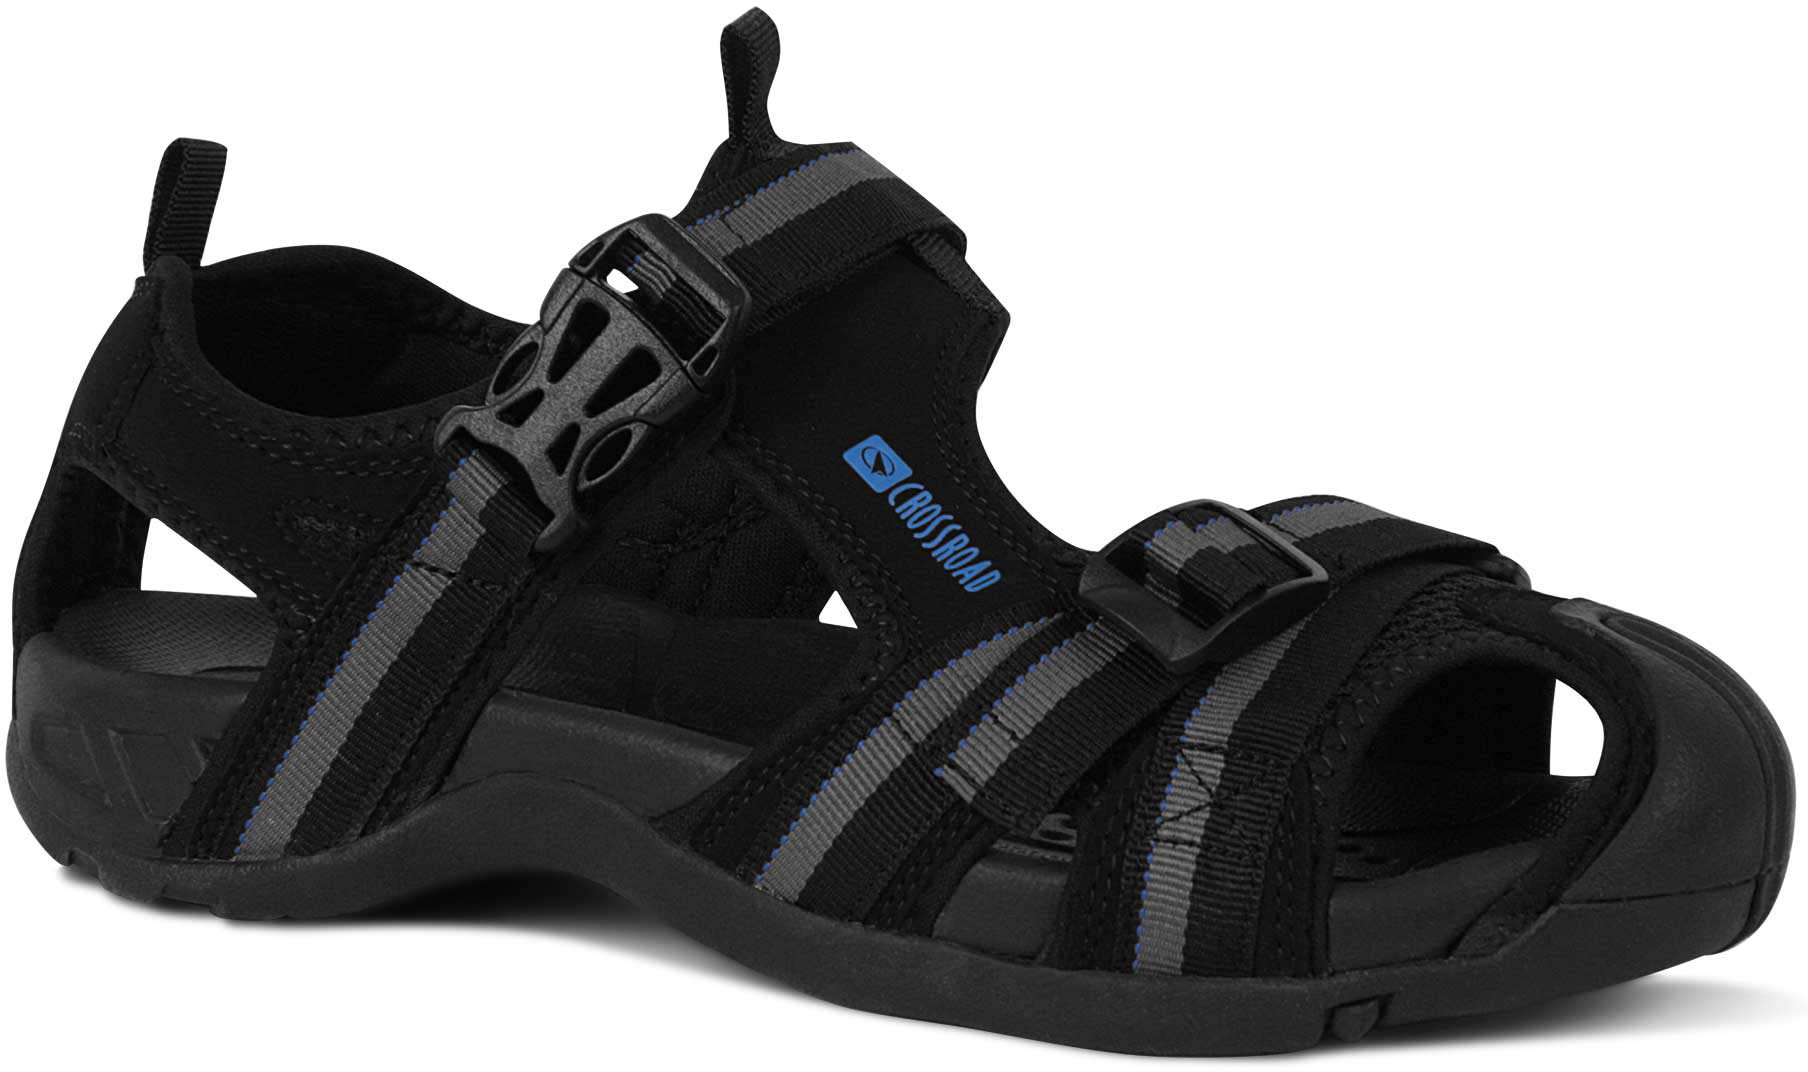 MACAN - Sandale pentru bărbați